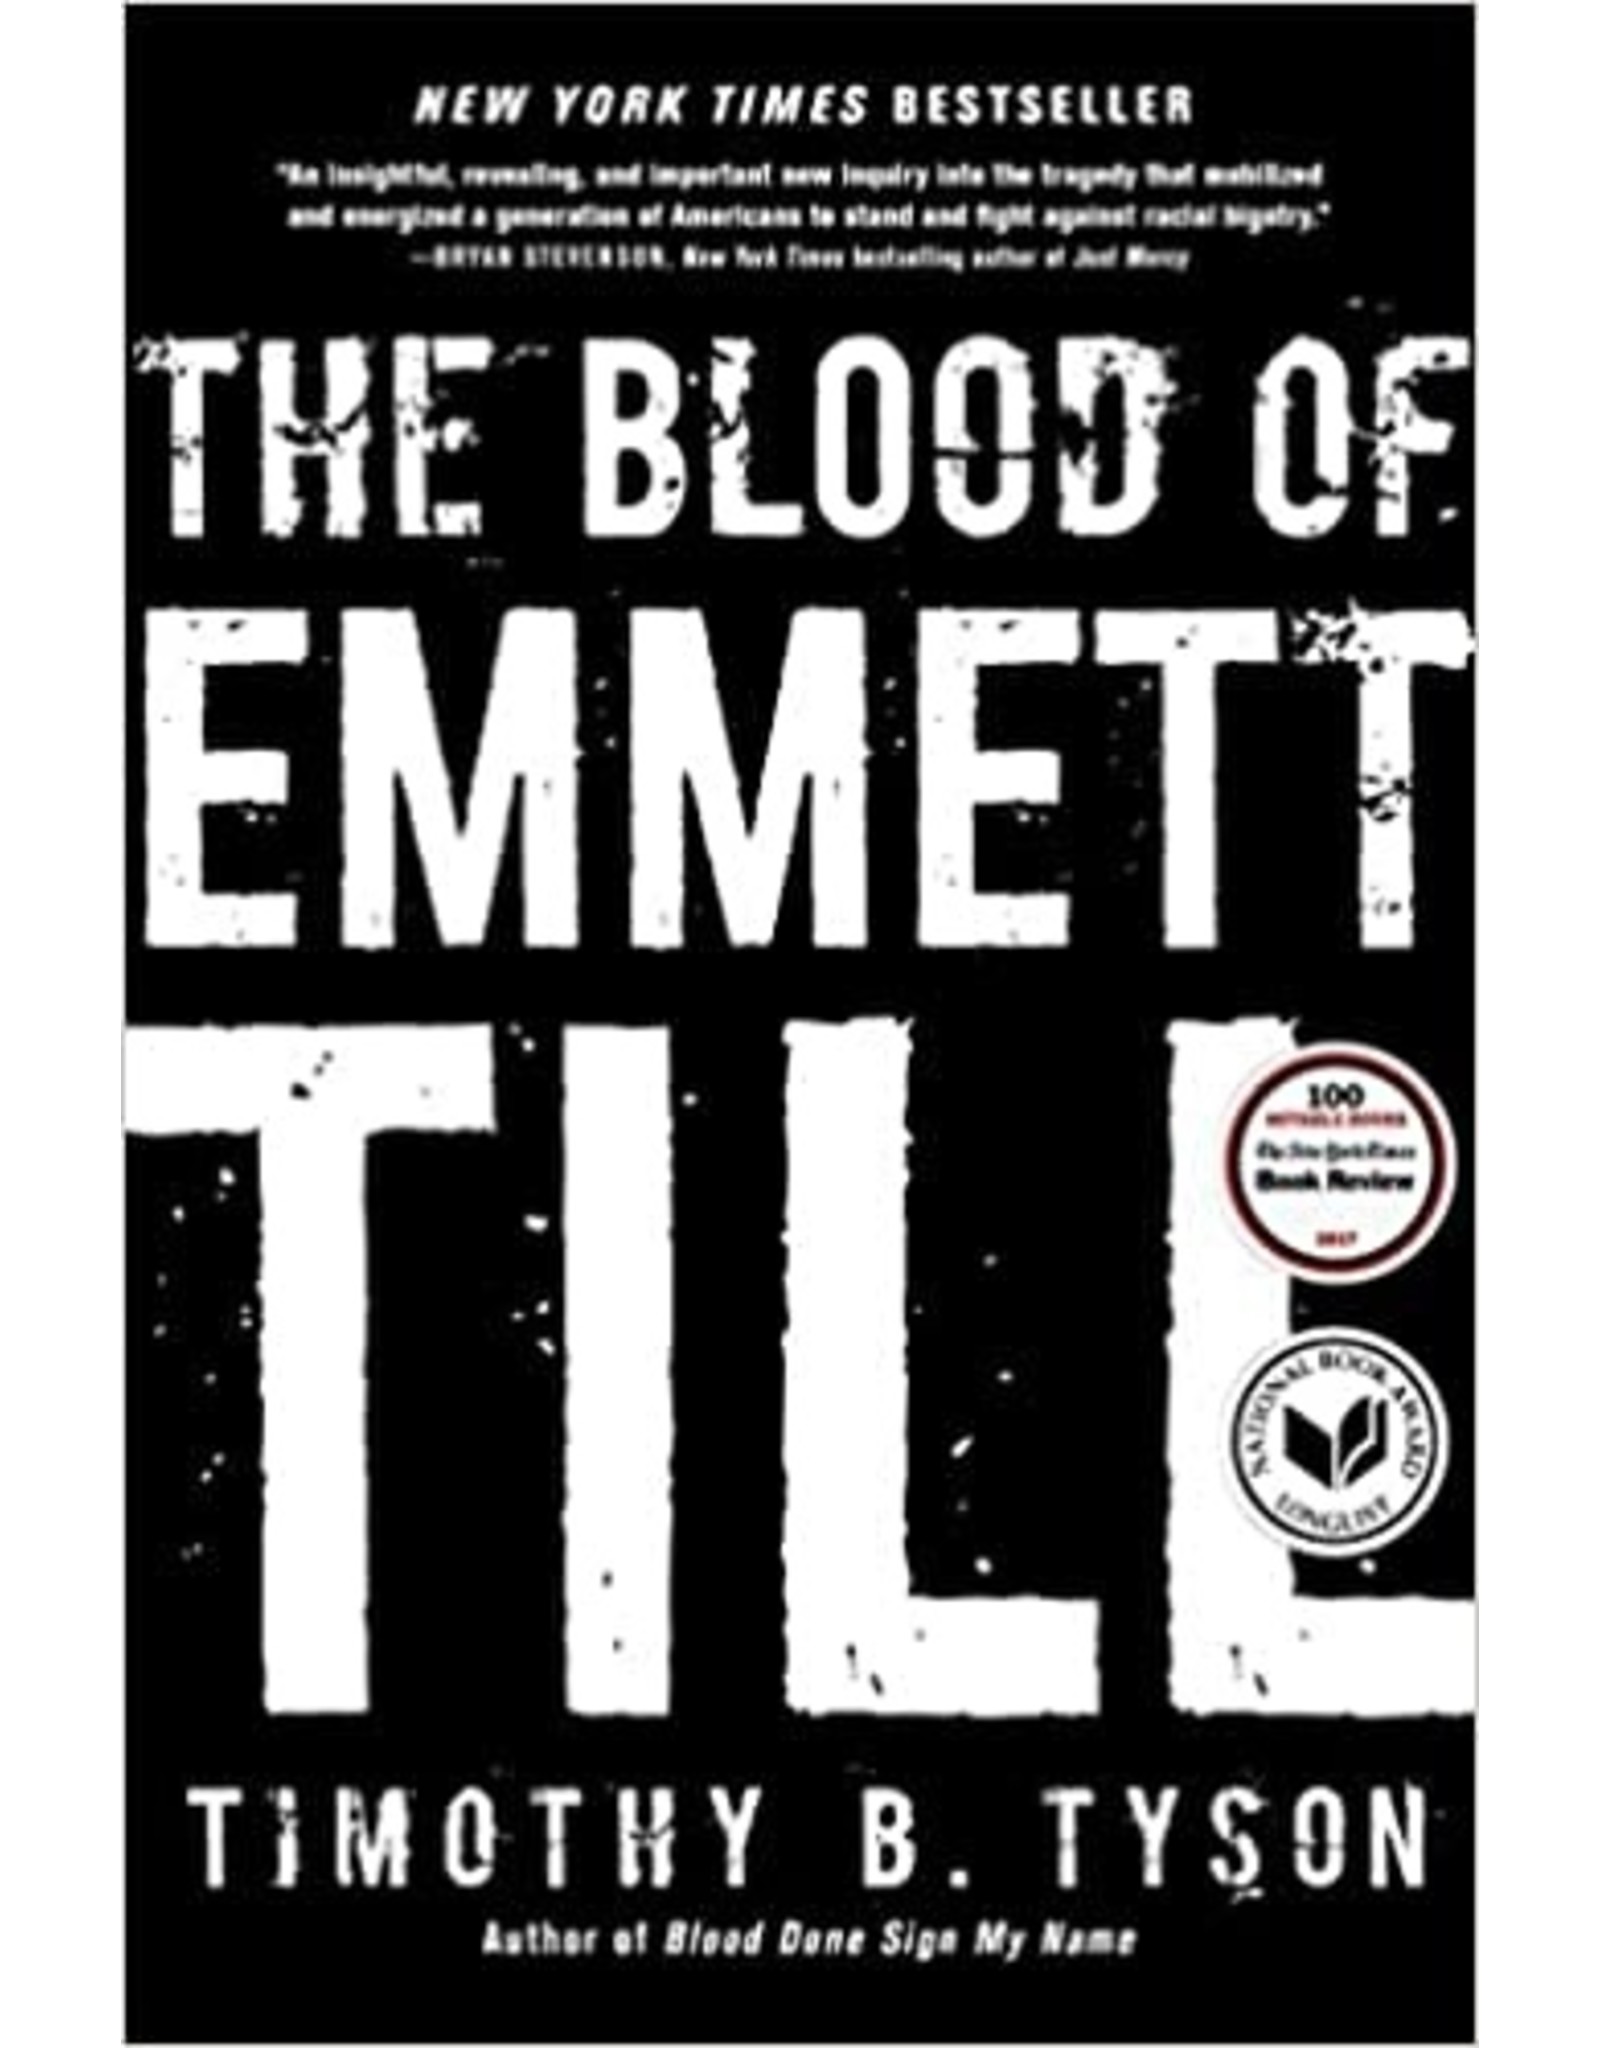 Non-Fiction: Jim Crow Era The Blood of Emmett Till